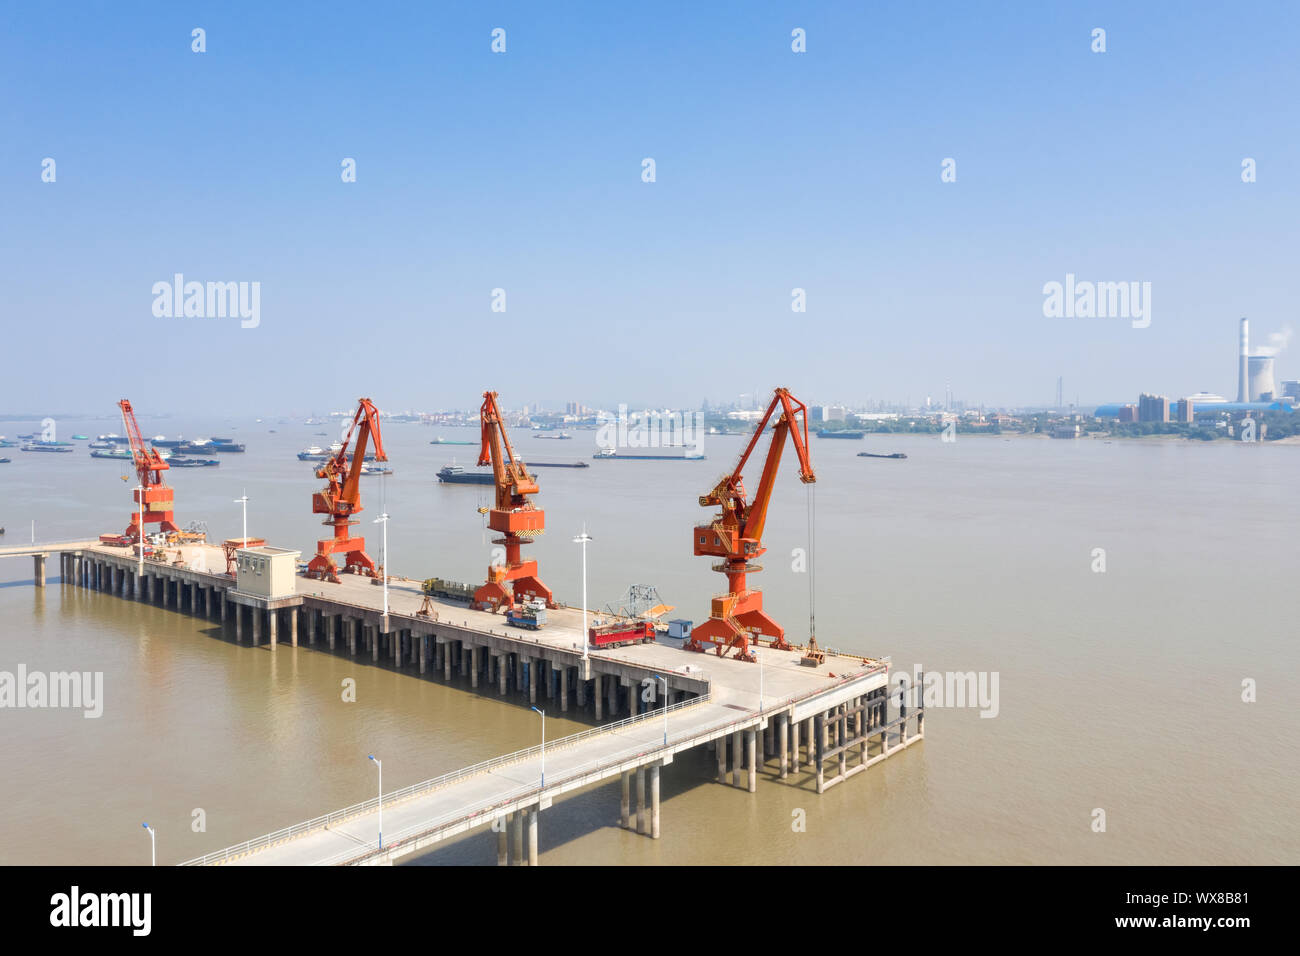 a row of pier cranes Stock Photo